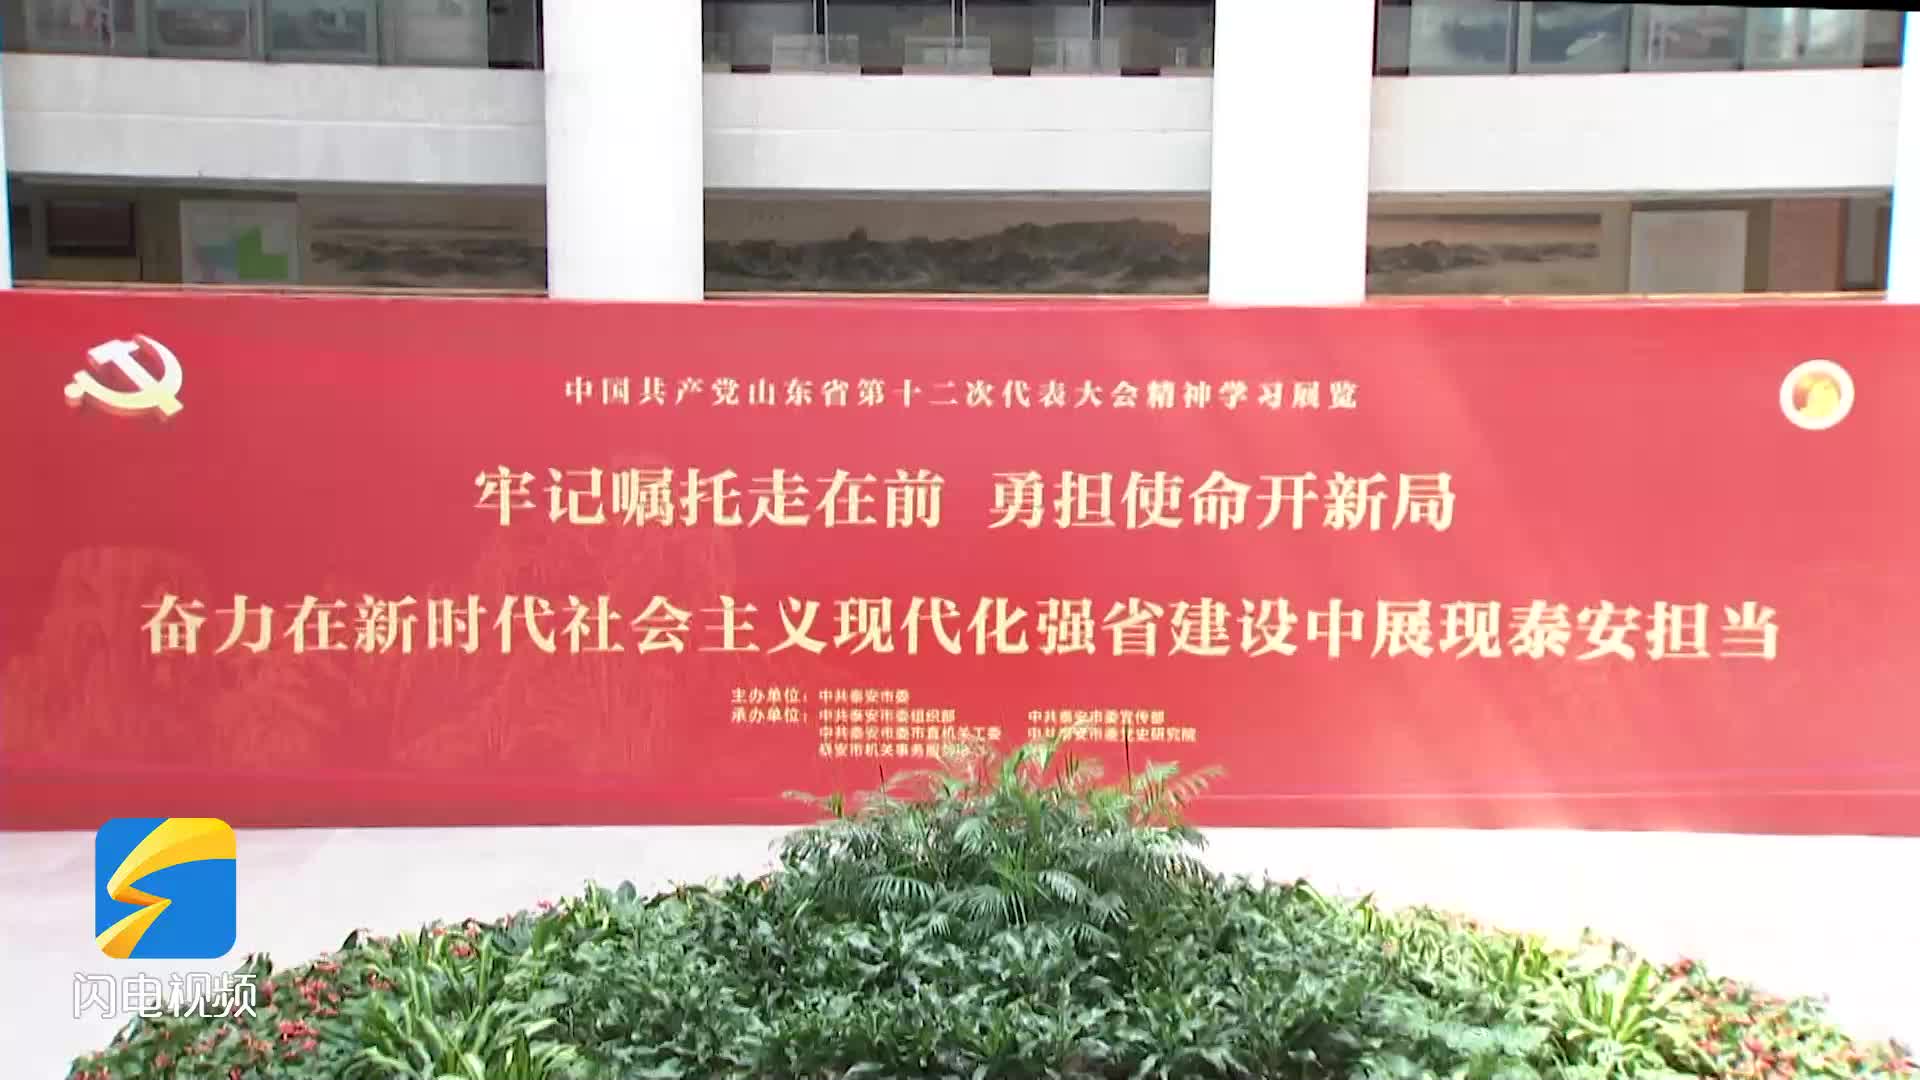 泰安市举办中国共产党山东省第十二次代表大会精神学习展览